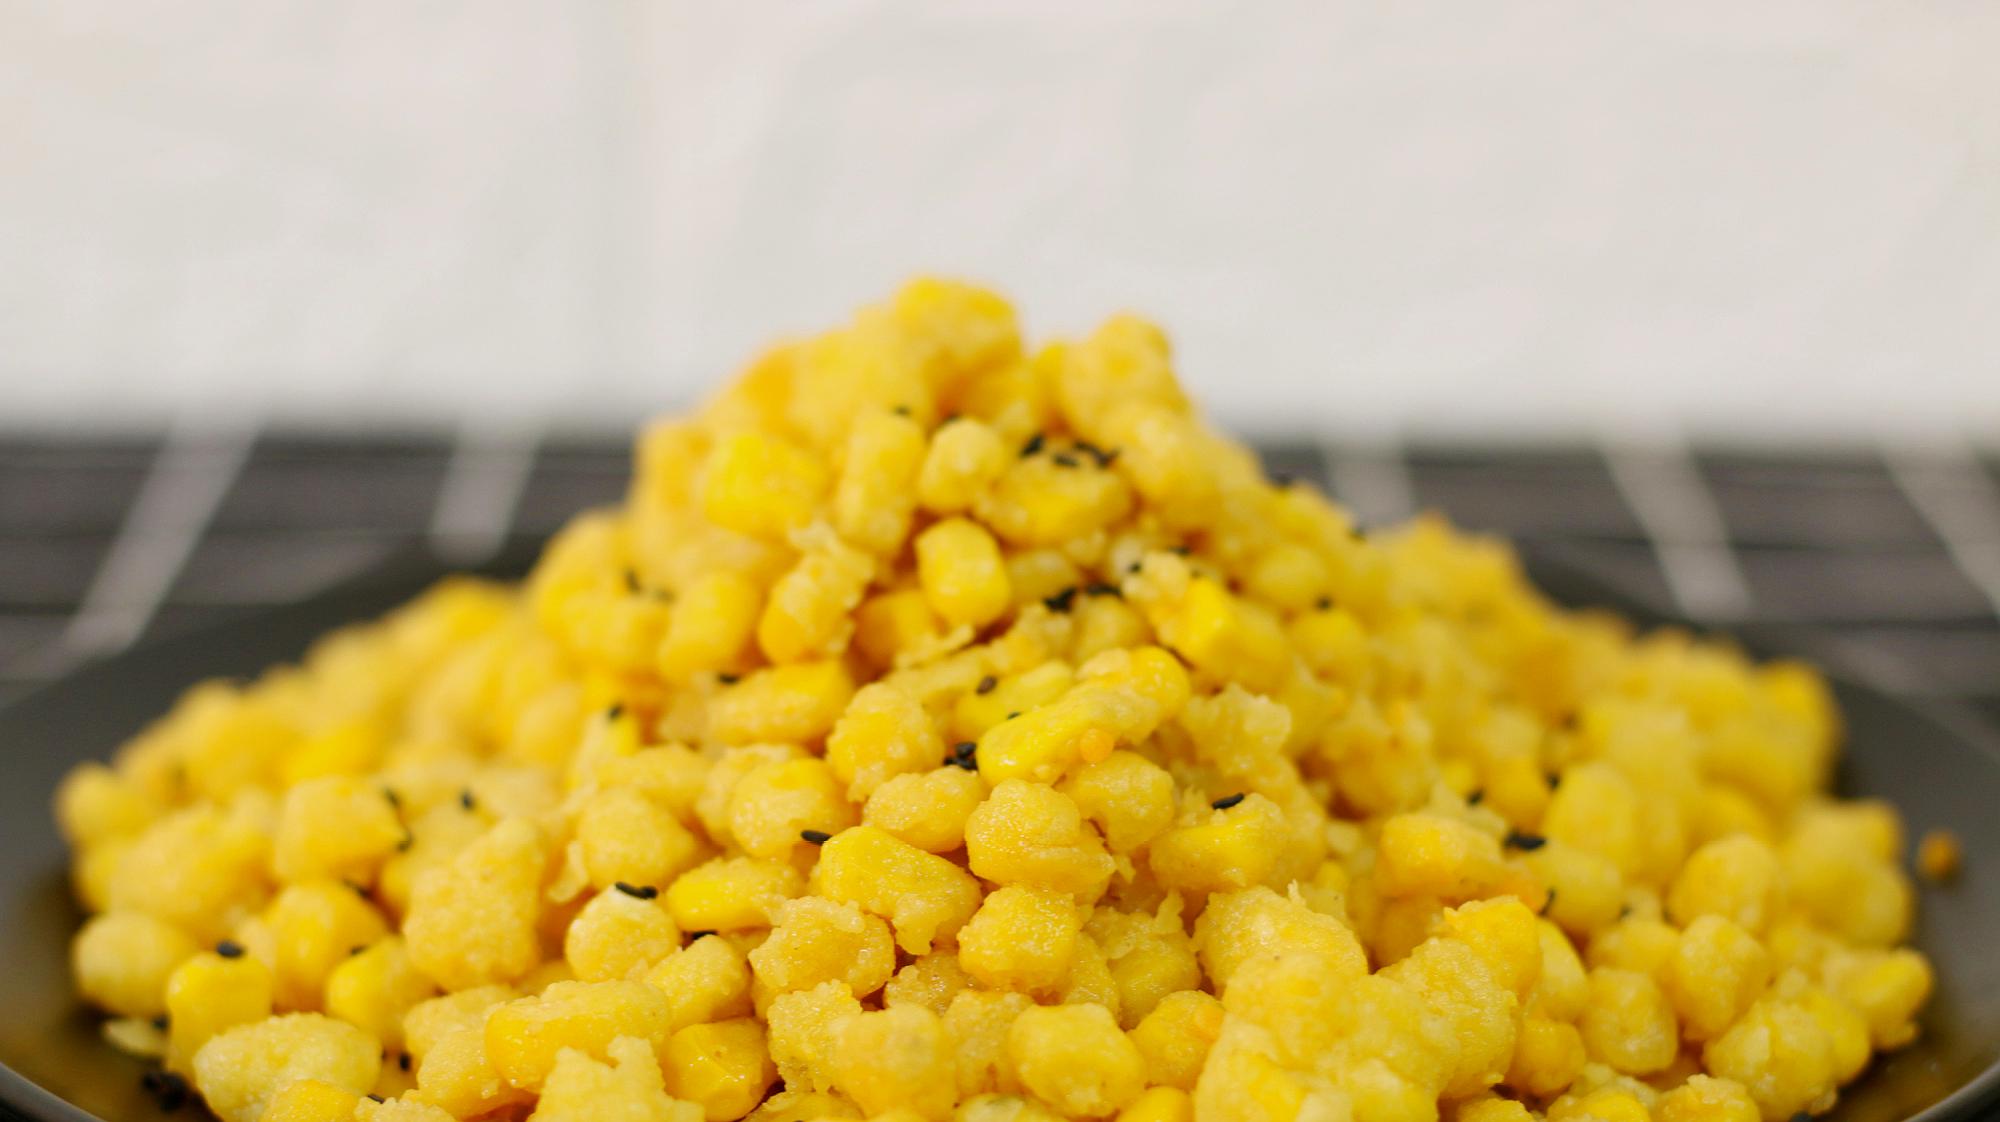 大厨告诉你怎样做出,焦脆弹牙,粒粒分明的咸蛋黄焗玉米粒!